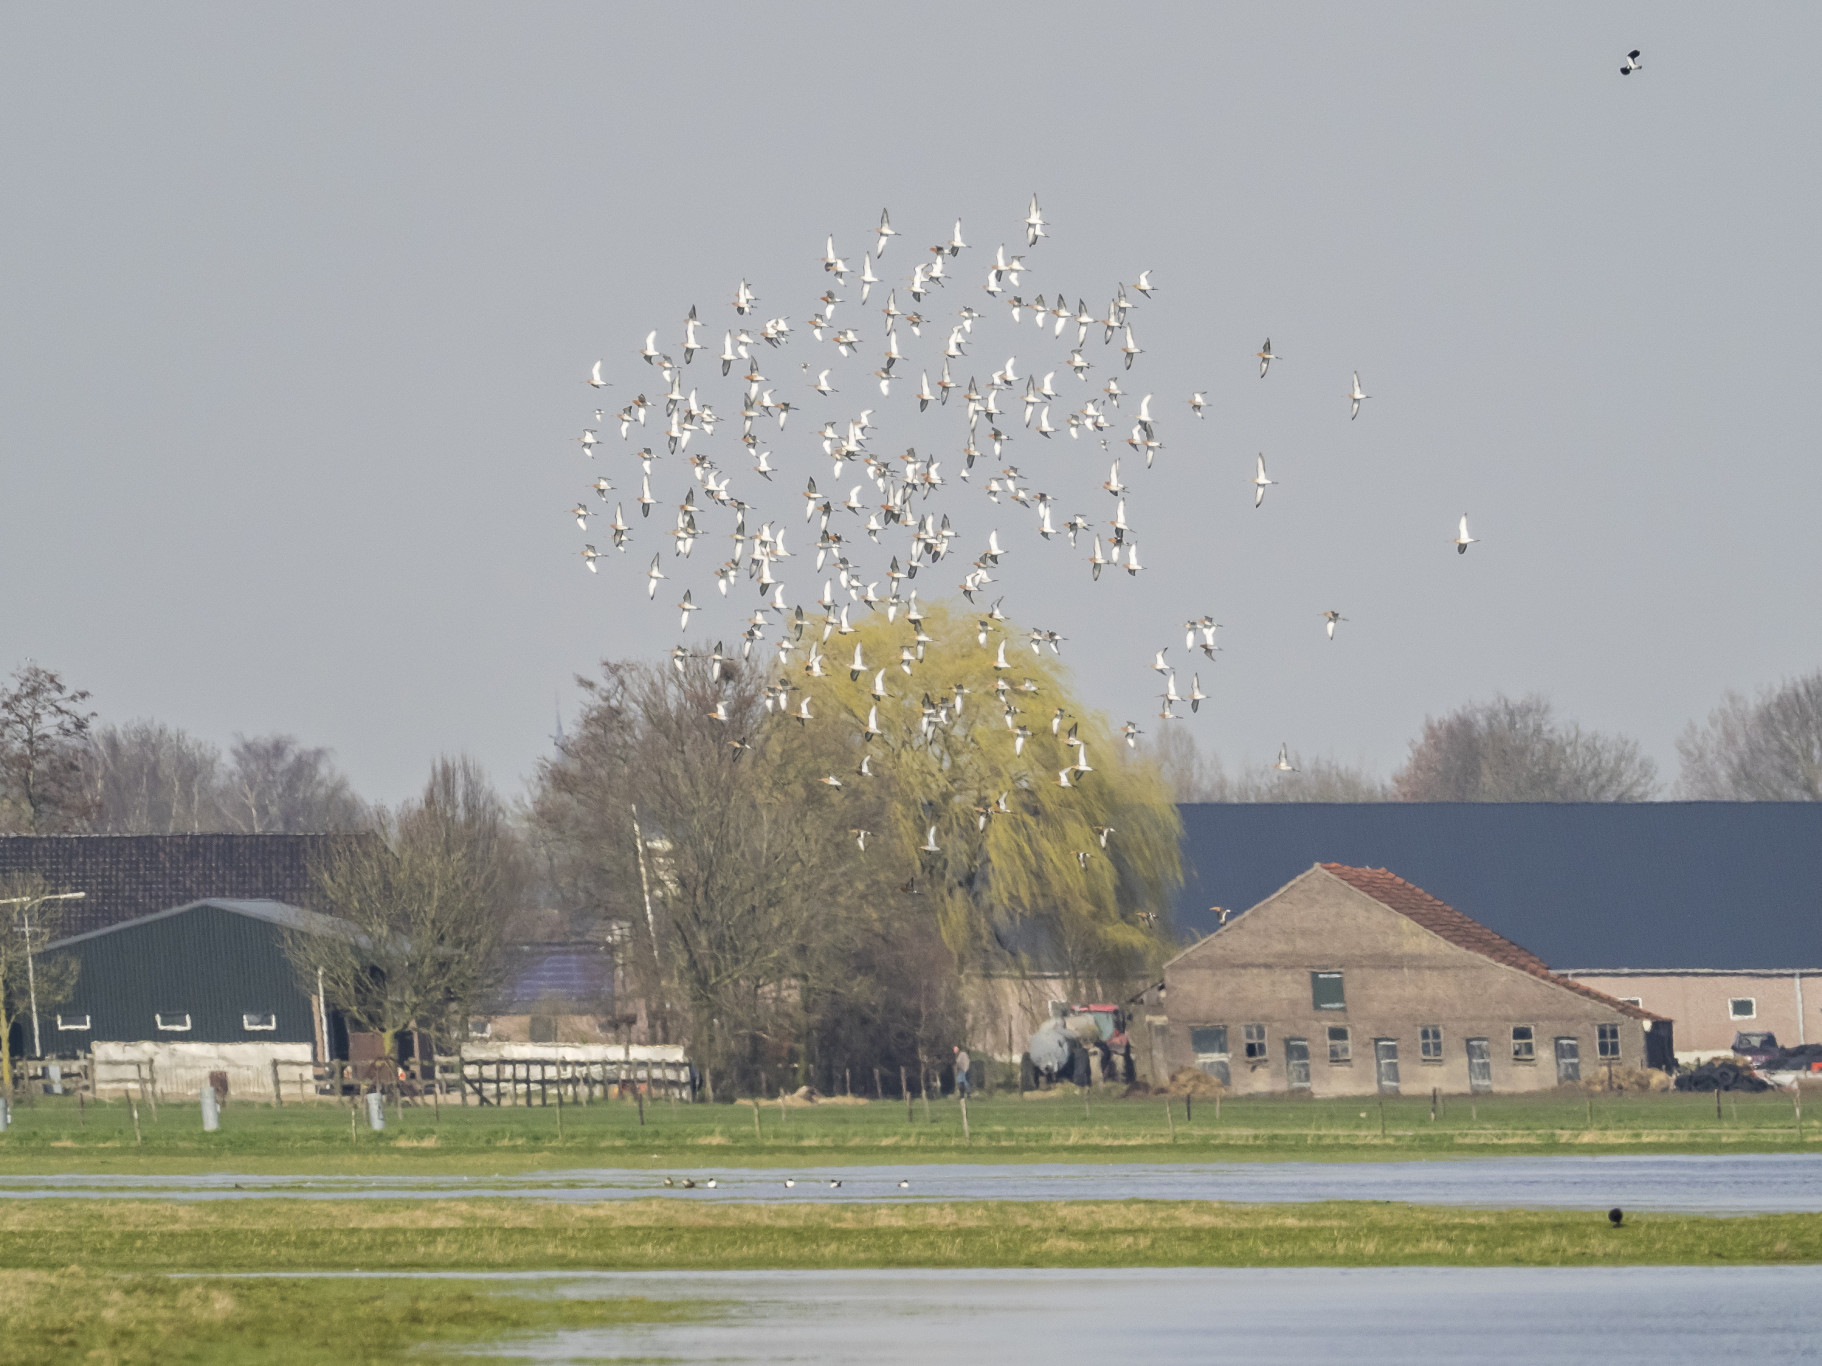 Ruim 25 jaar bezig met weidevogelbescherming in de polders rond Oss